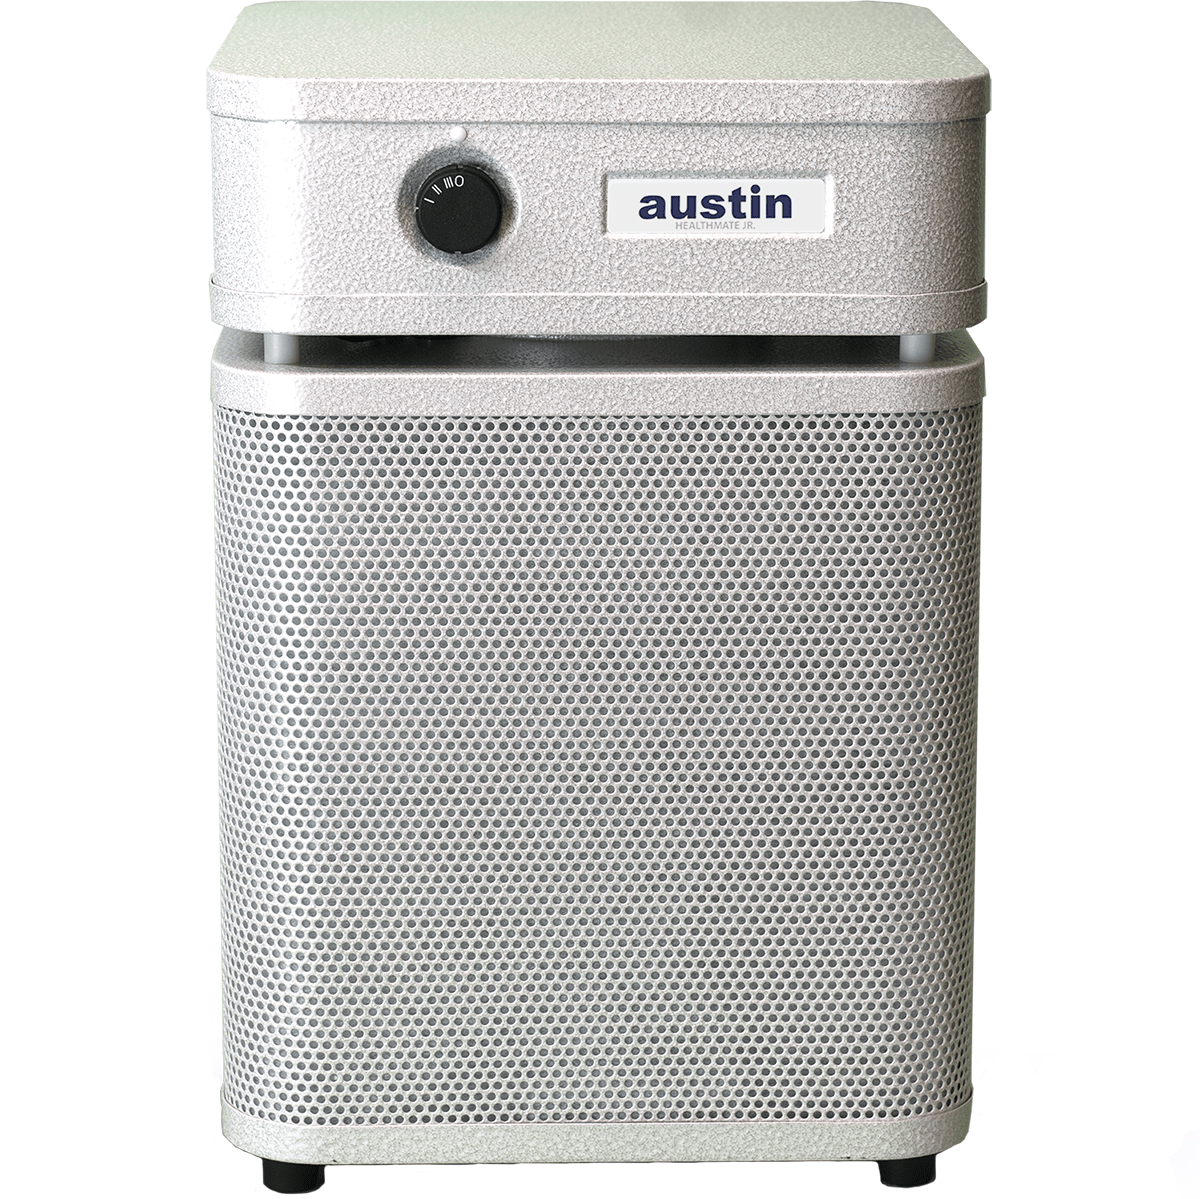 Austin Air HealthMate Plus Jr. HM250 Air Purifier - Sandstone